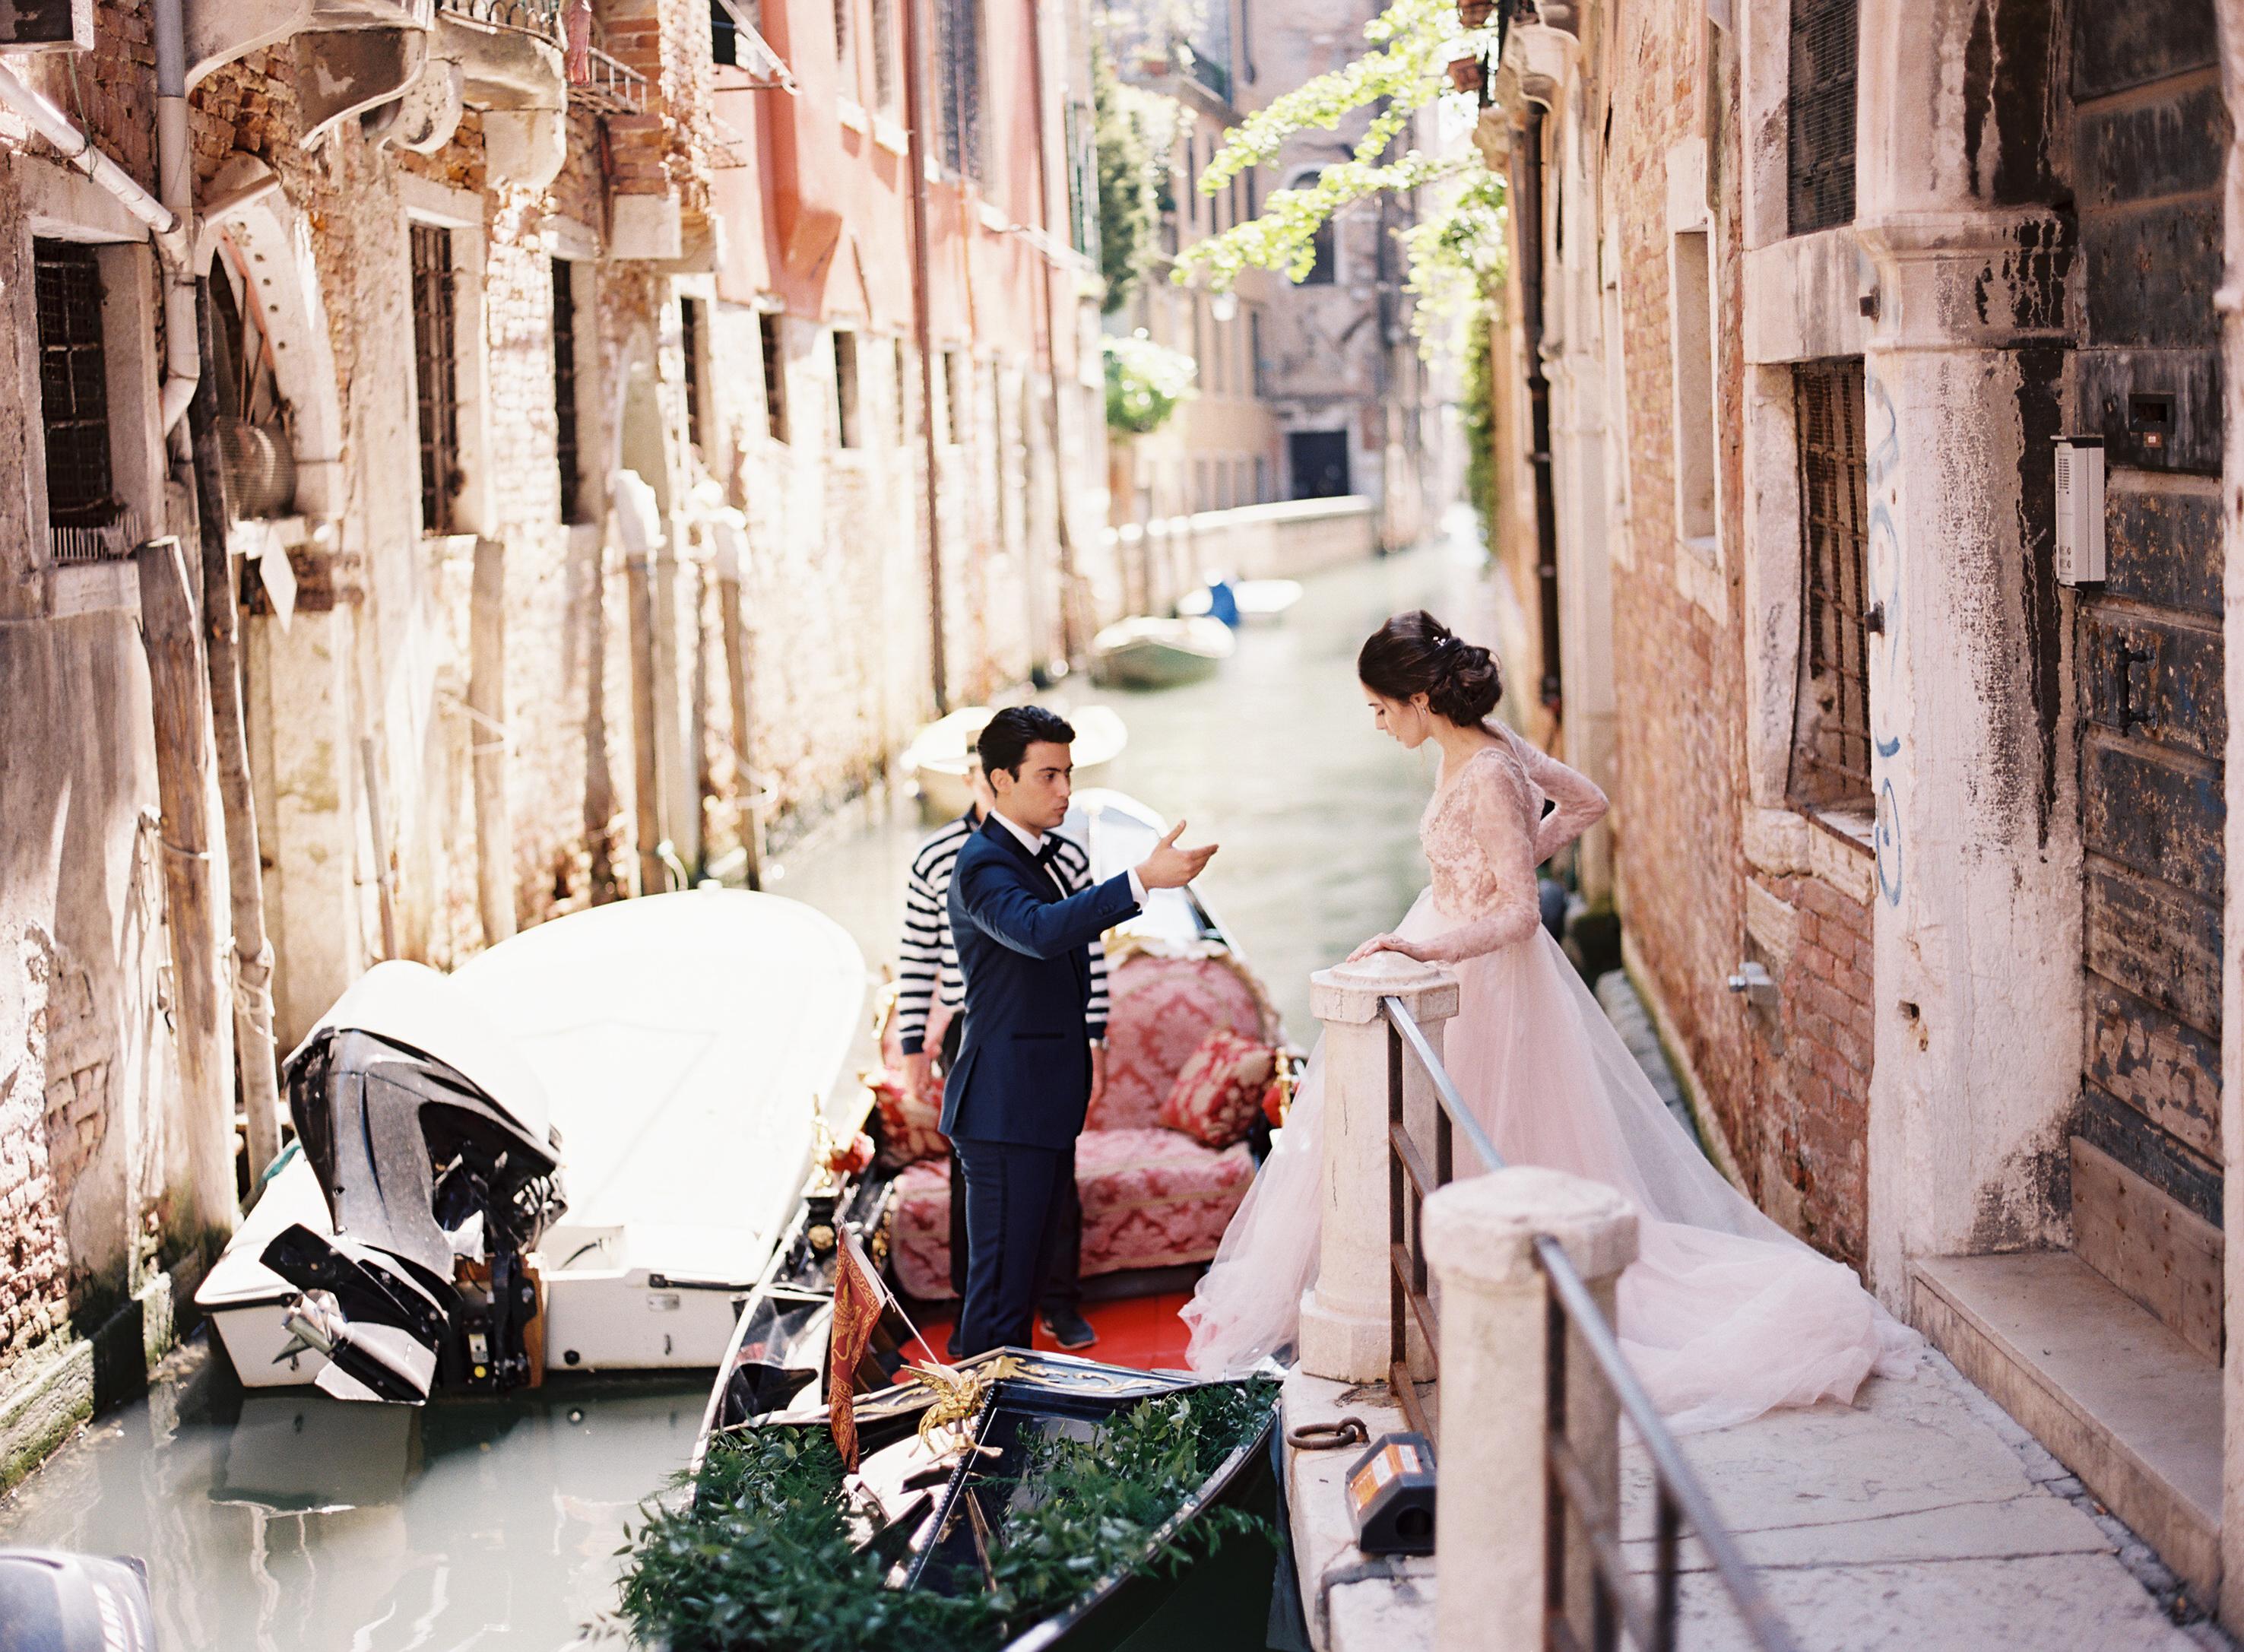 Романтика в венеции